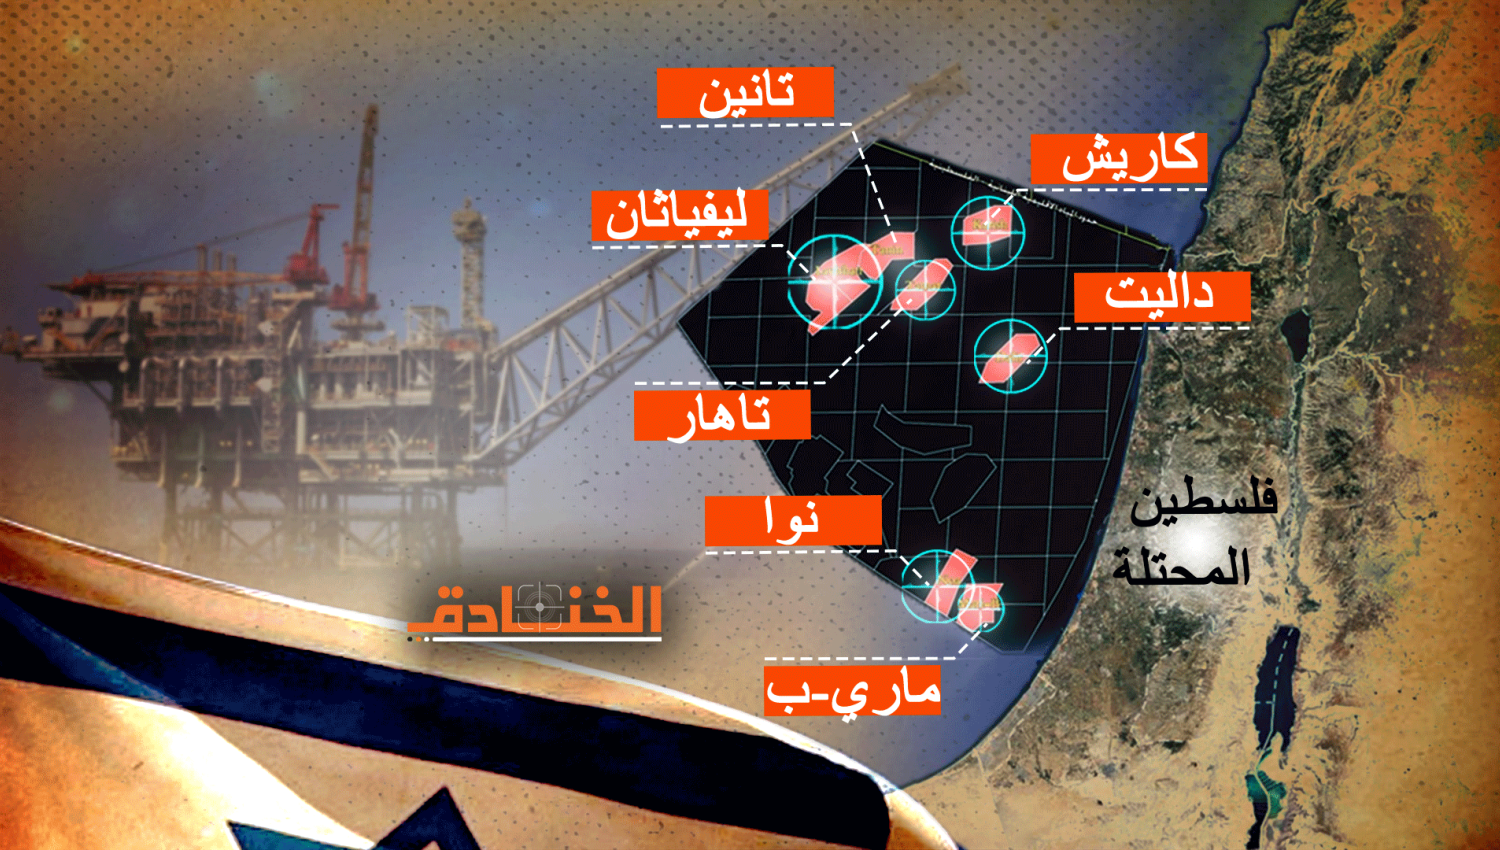 إنتاج الغاز: الى ماذا يطمح الاحتلال في الشرق الأوسط؟  